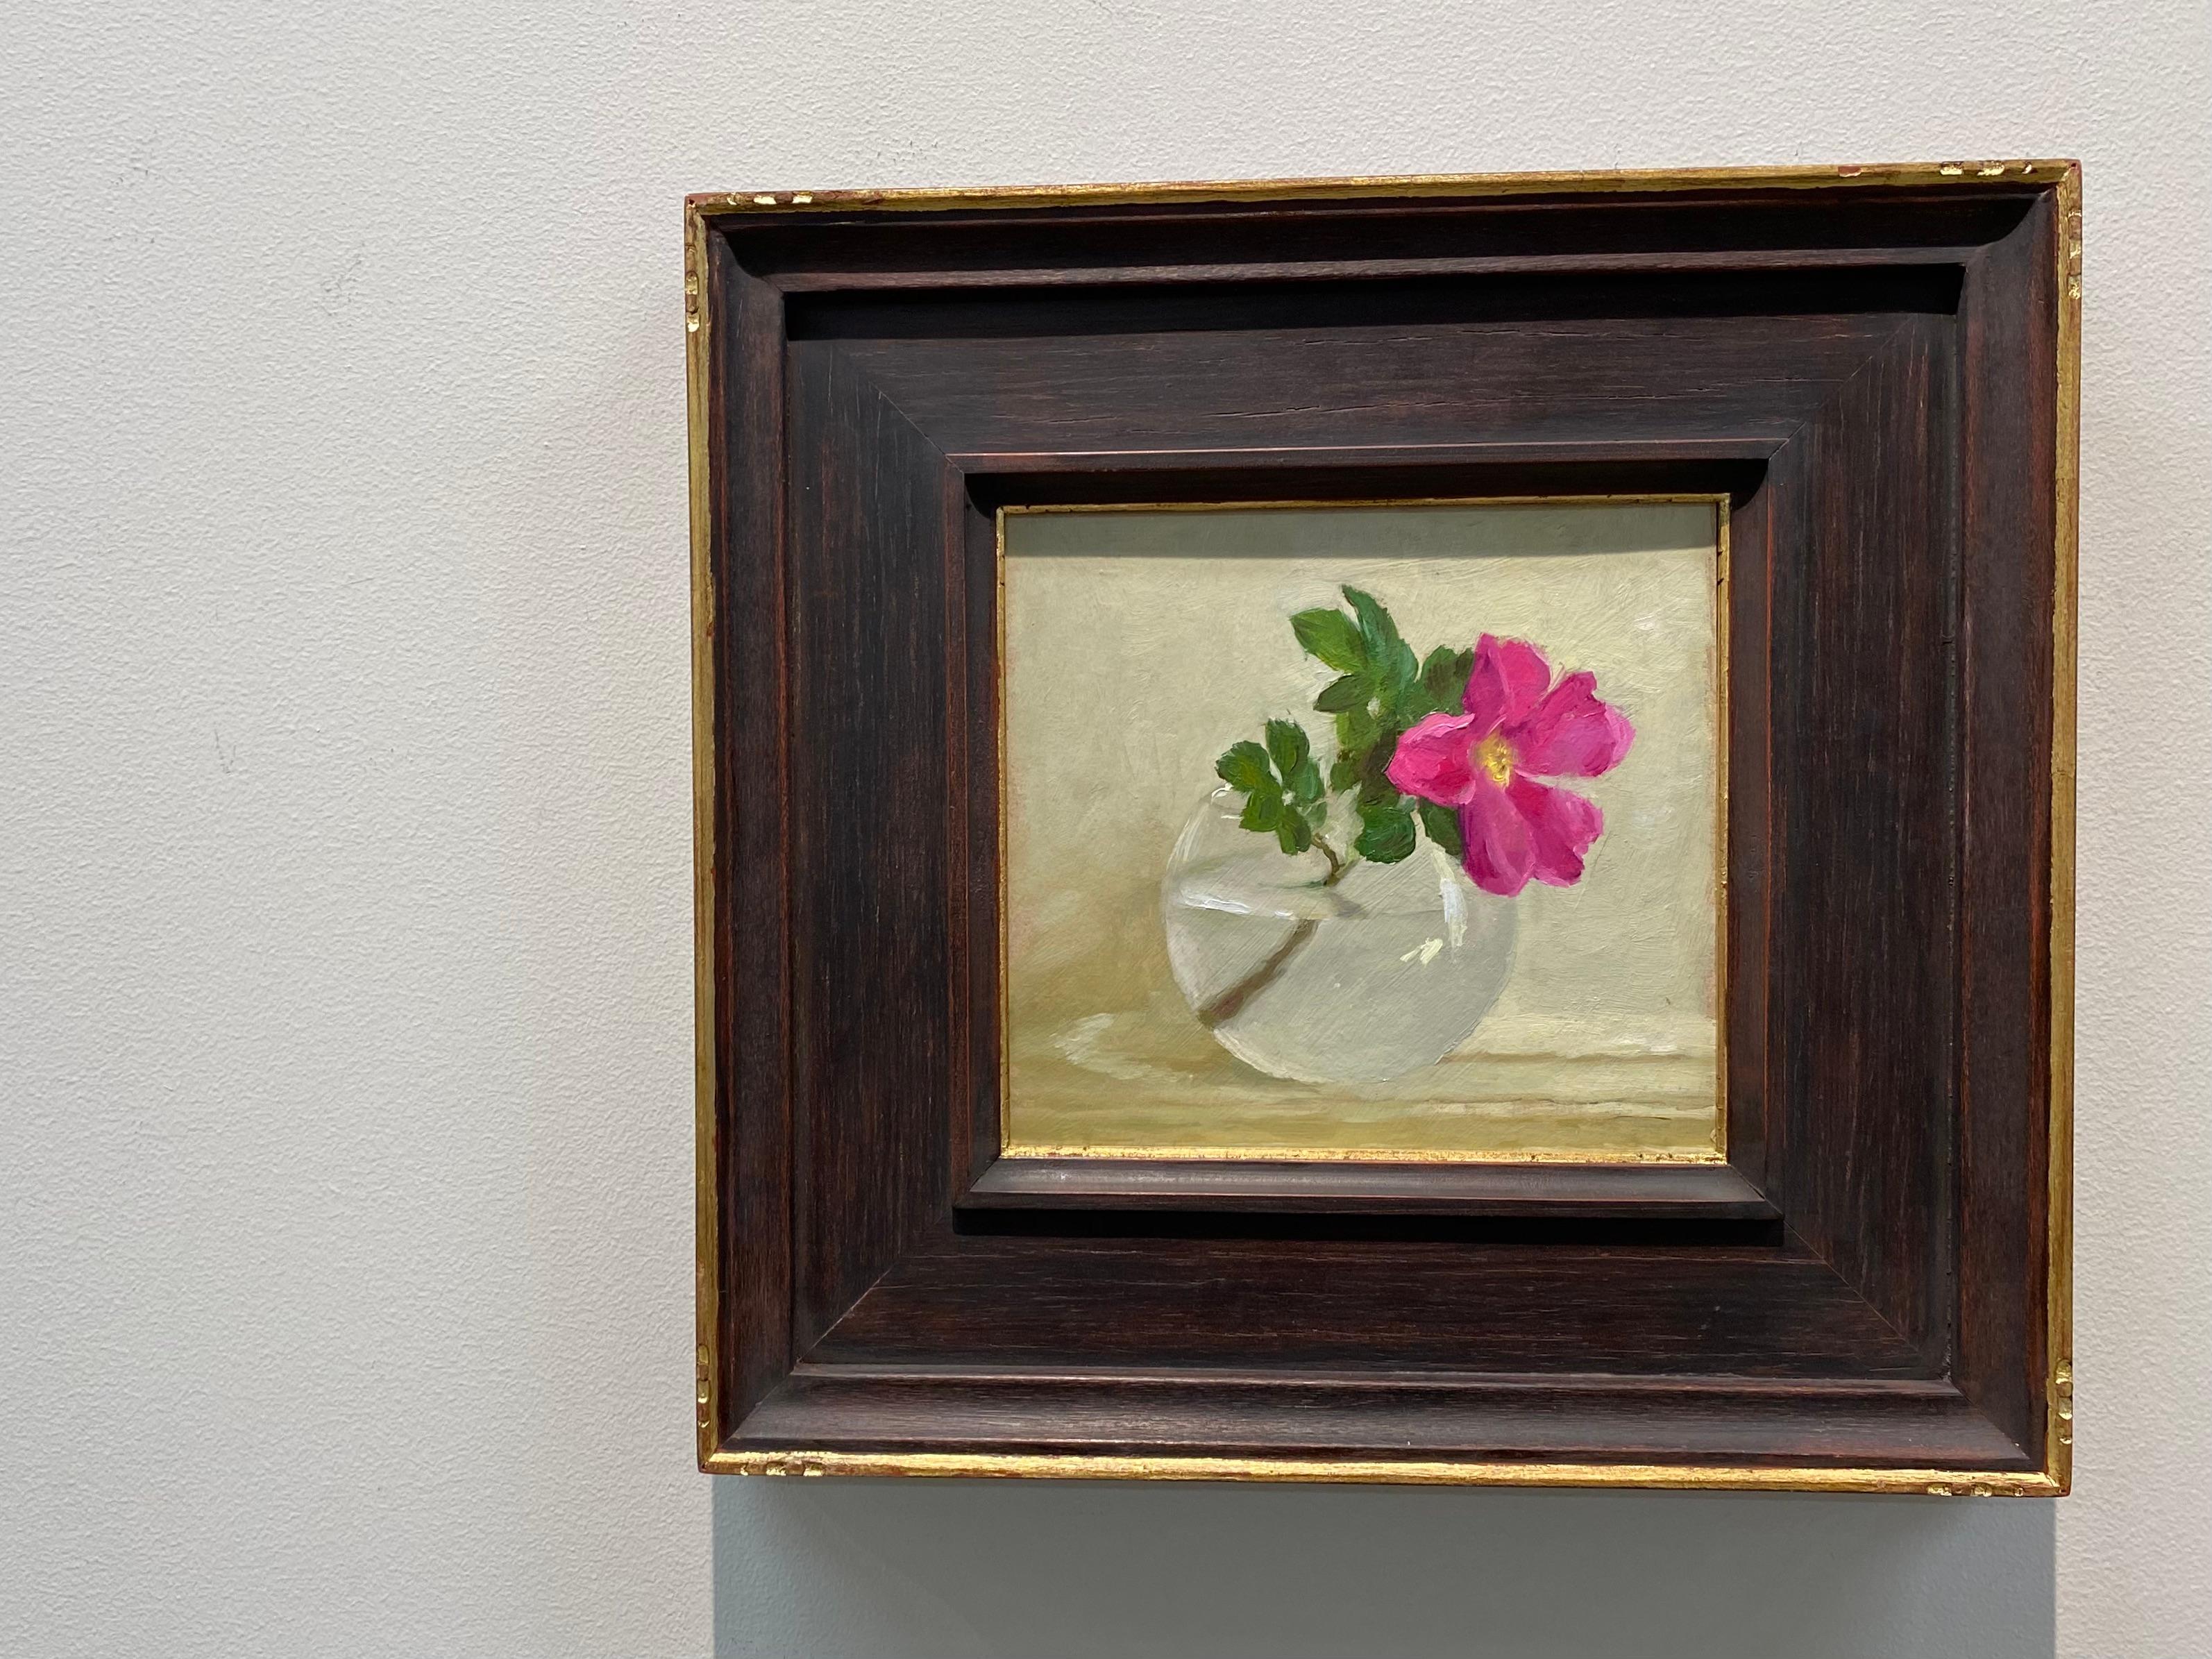 Rosehip-Stillleben aus dem 21. Jahrhundert, Gemälde einer Glasschale mit rosa Rosehips – Painting von Ksenya Istomina